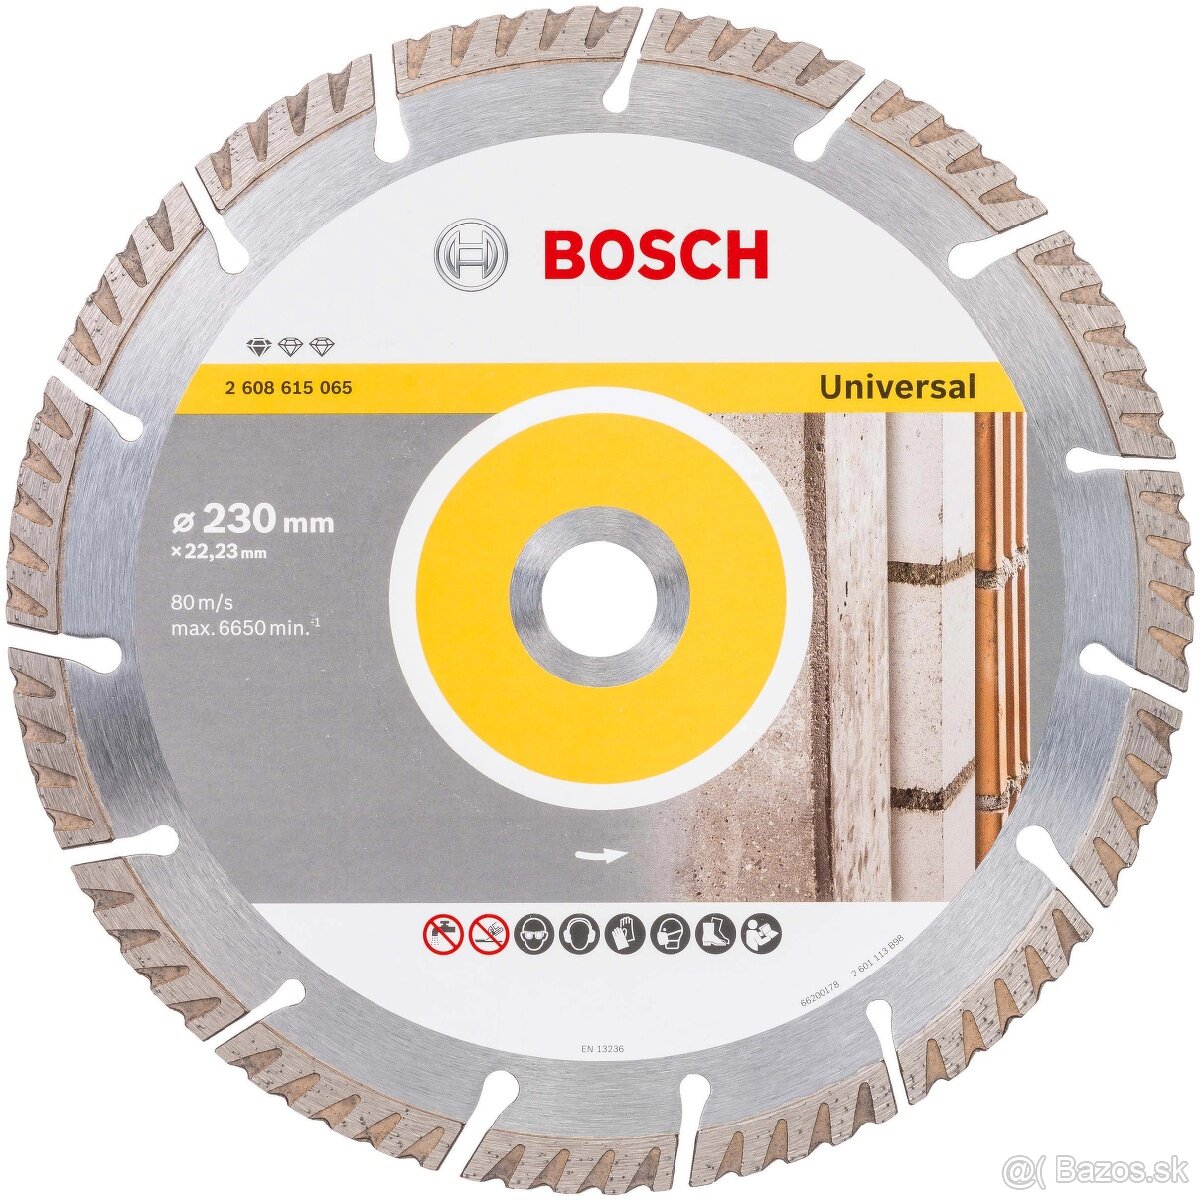 Bosch Diamantový rezný kotúč 230 mm 

